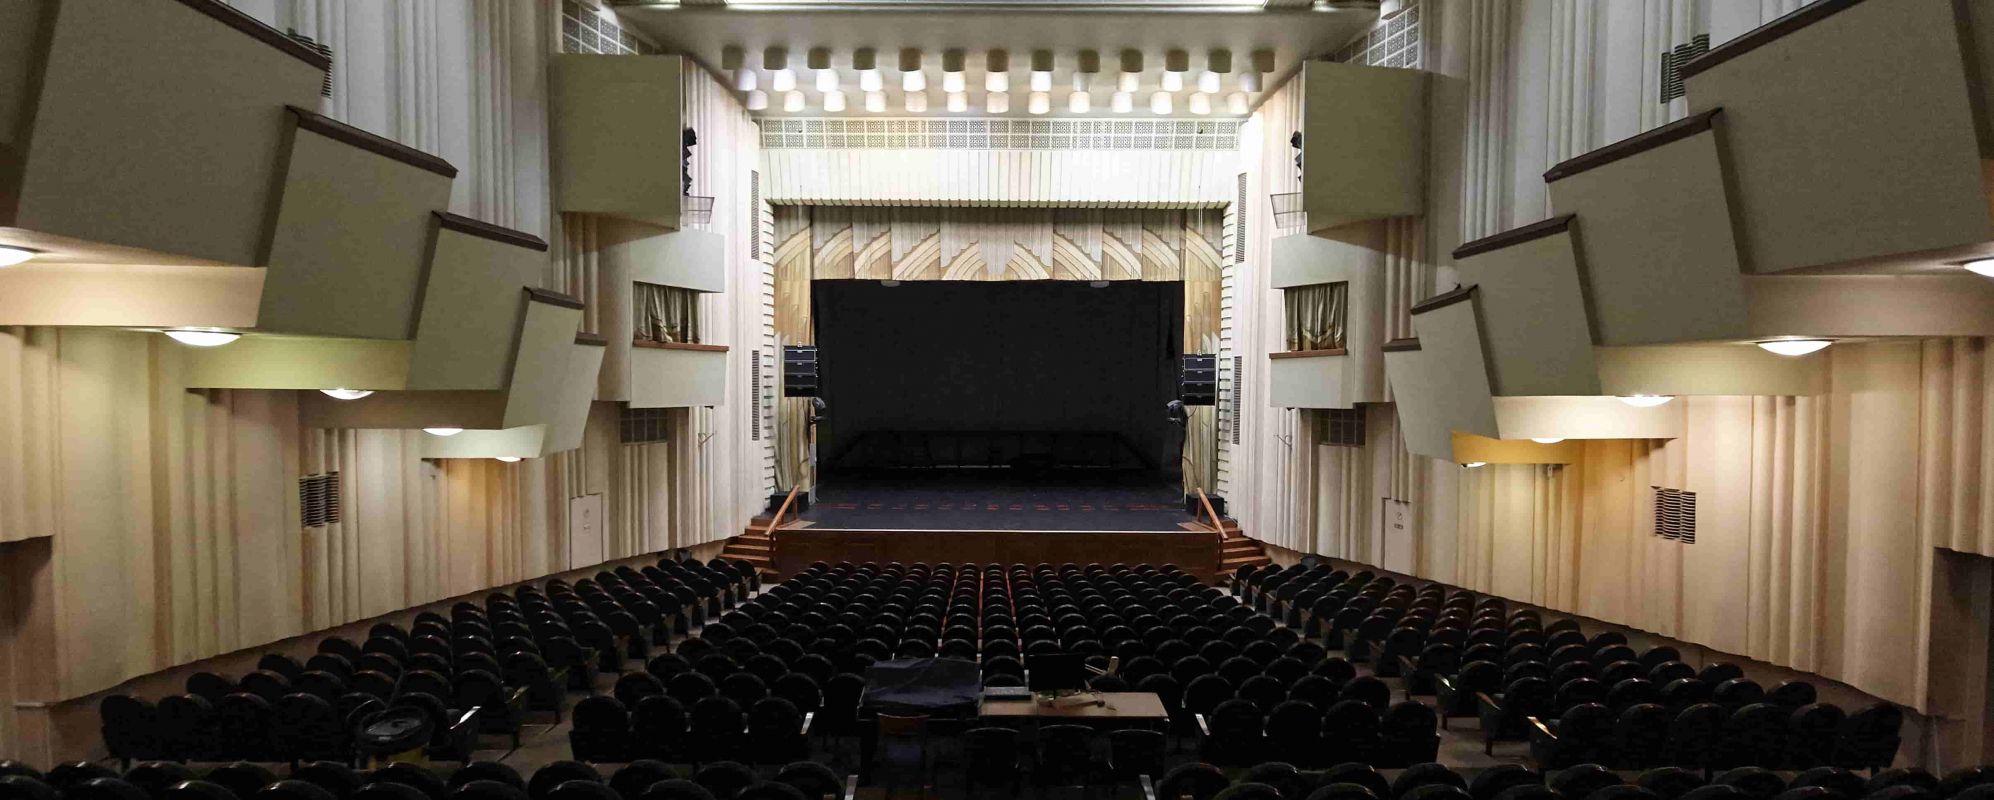 Фотографии концертного зала Большой зал Государственной филармонии Кузбасса